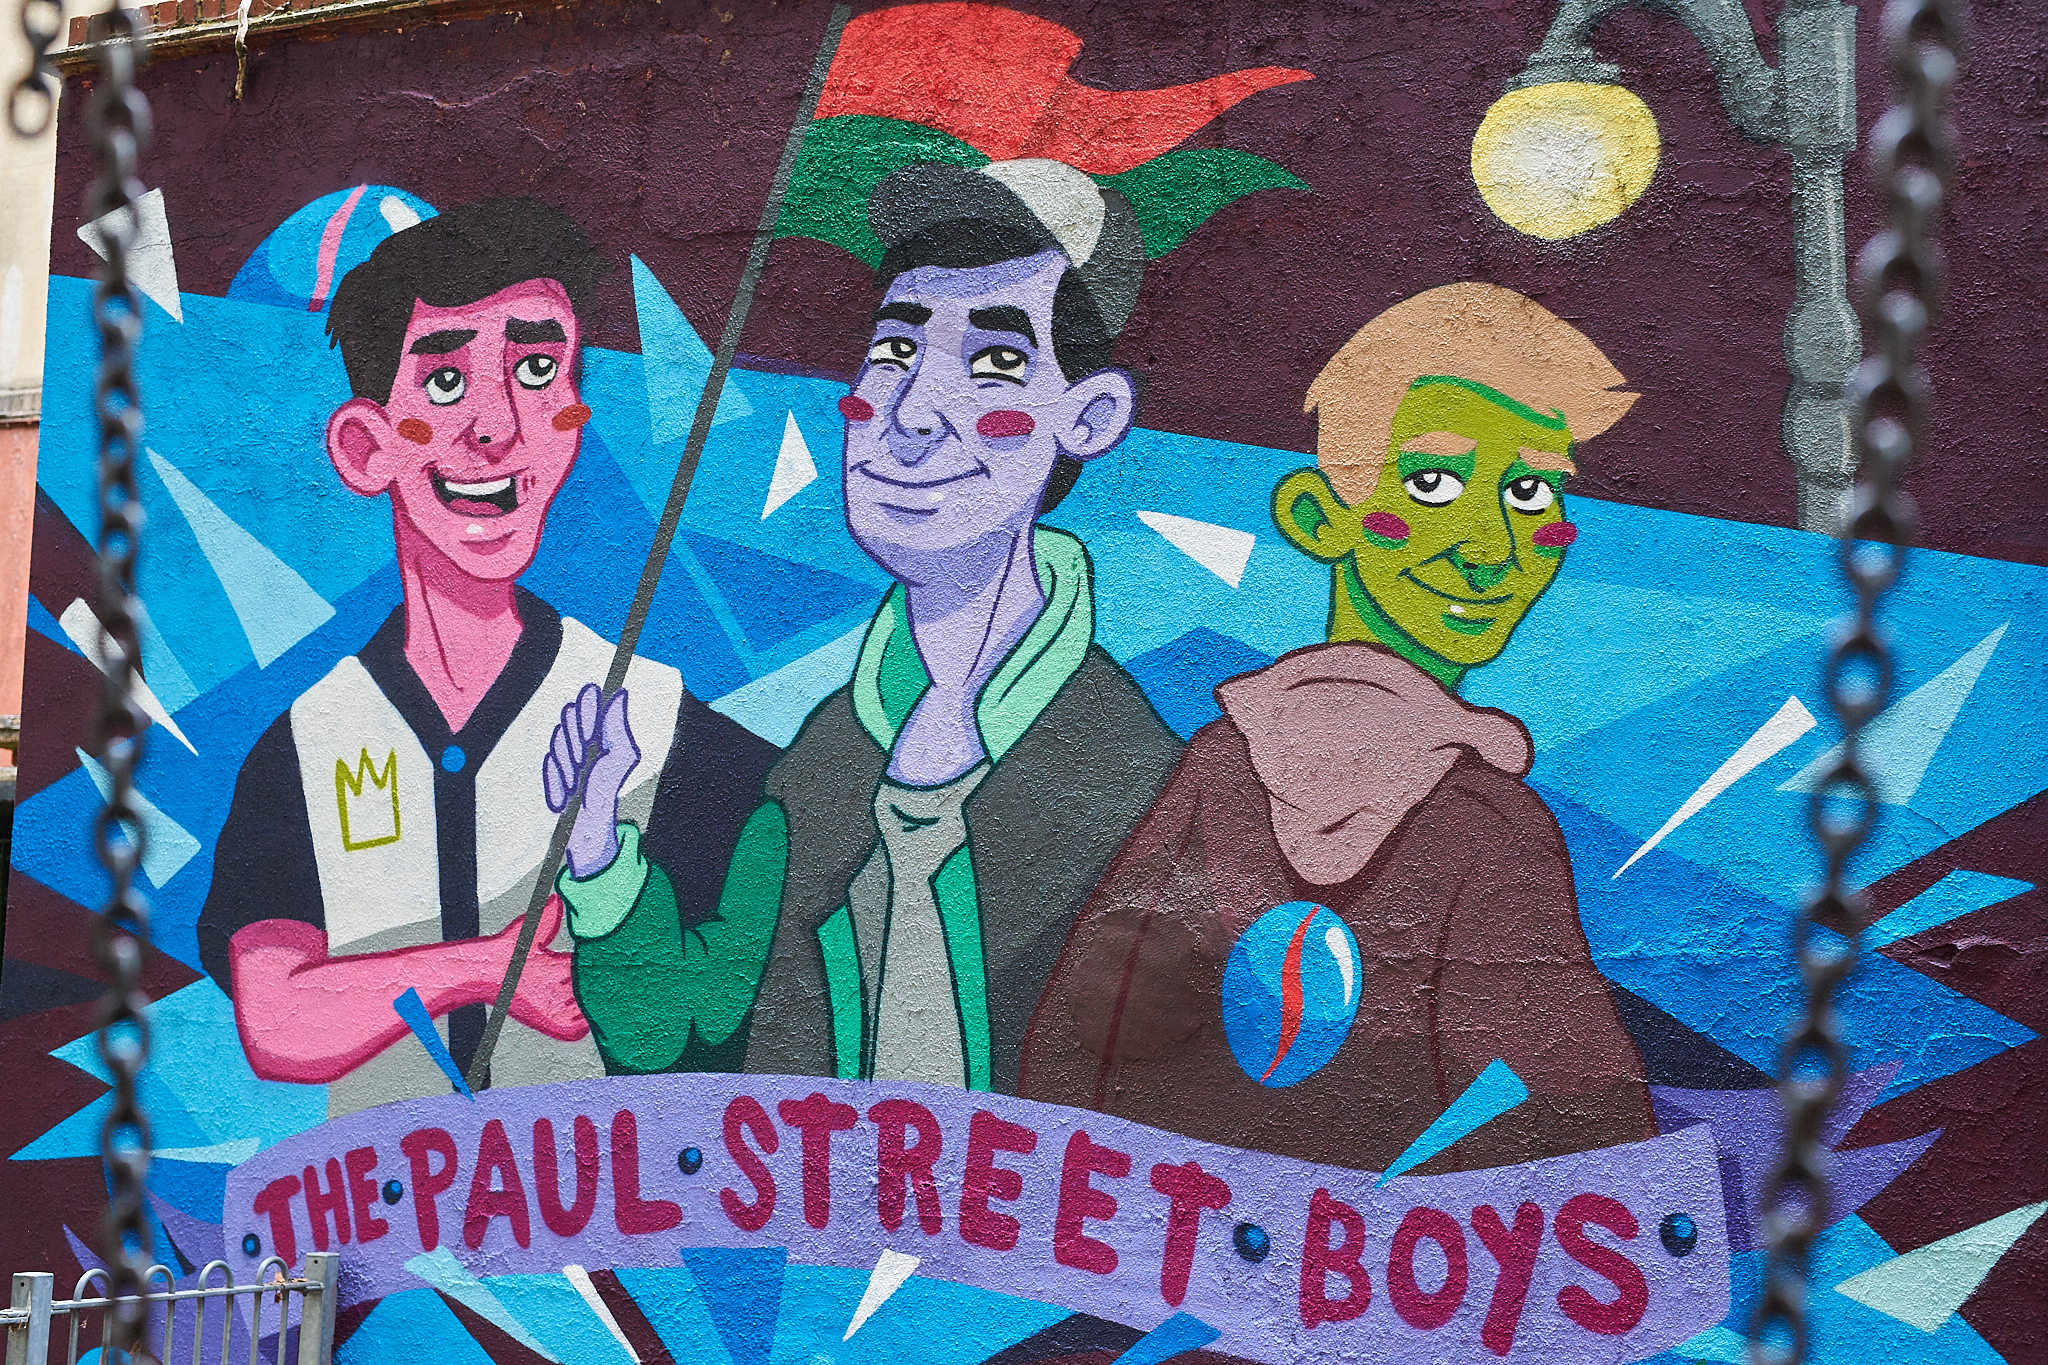 Magyar street art művészek festették fel London egyik tűzfalára a Pál utcai fiúkat